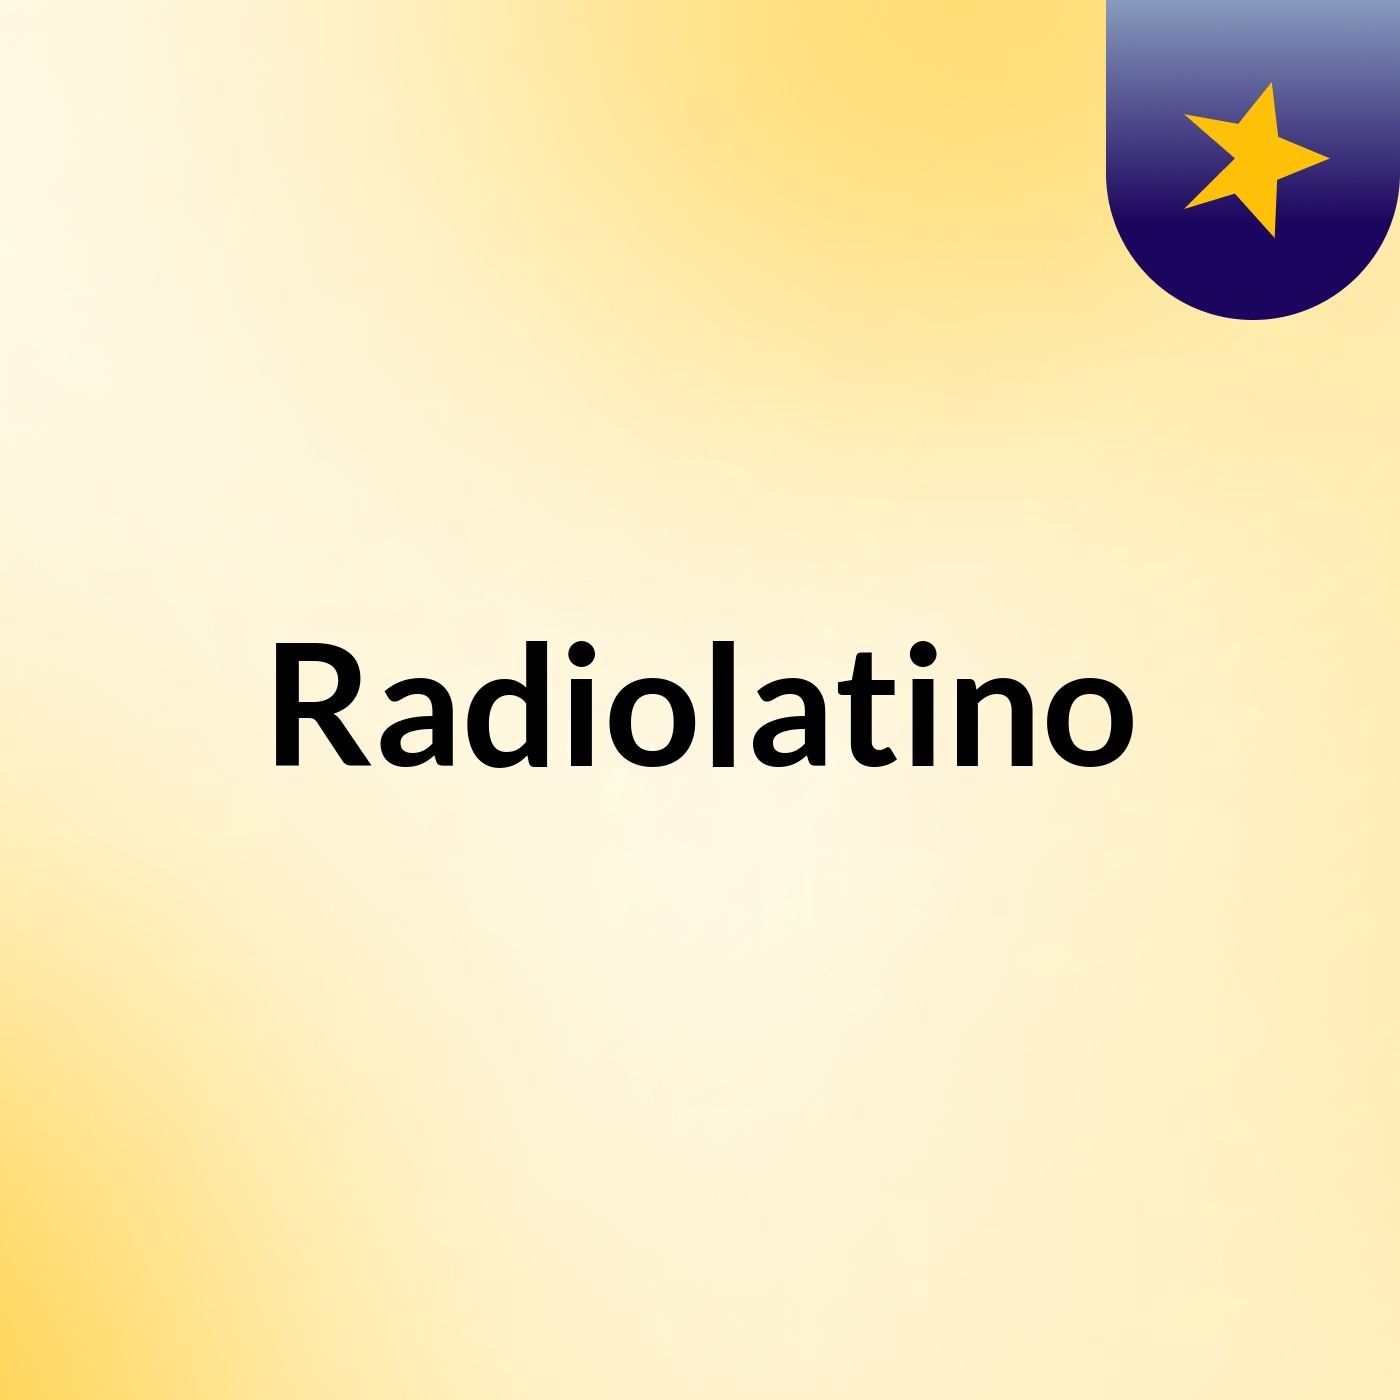 Radiolatino